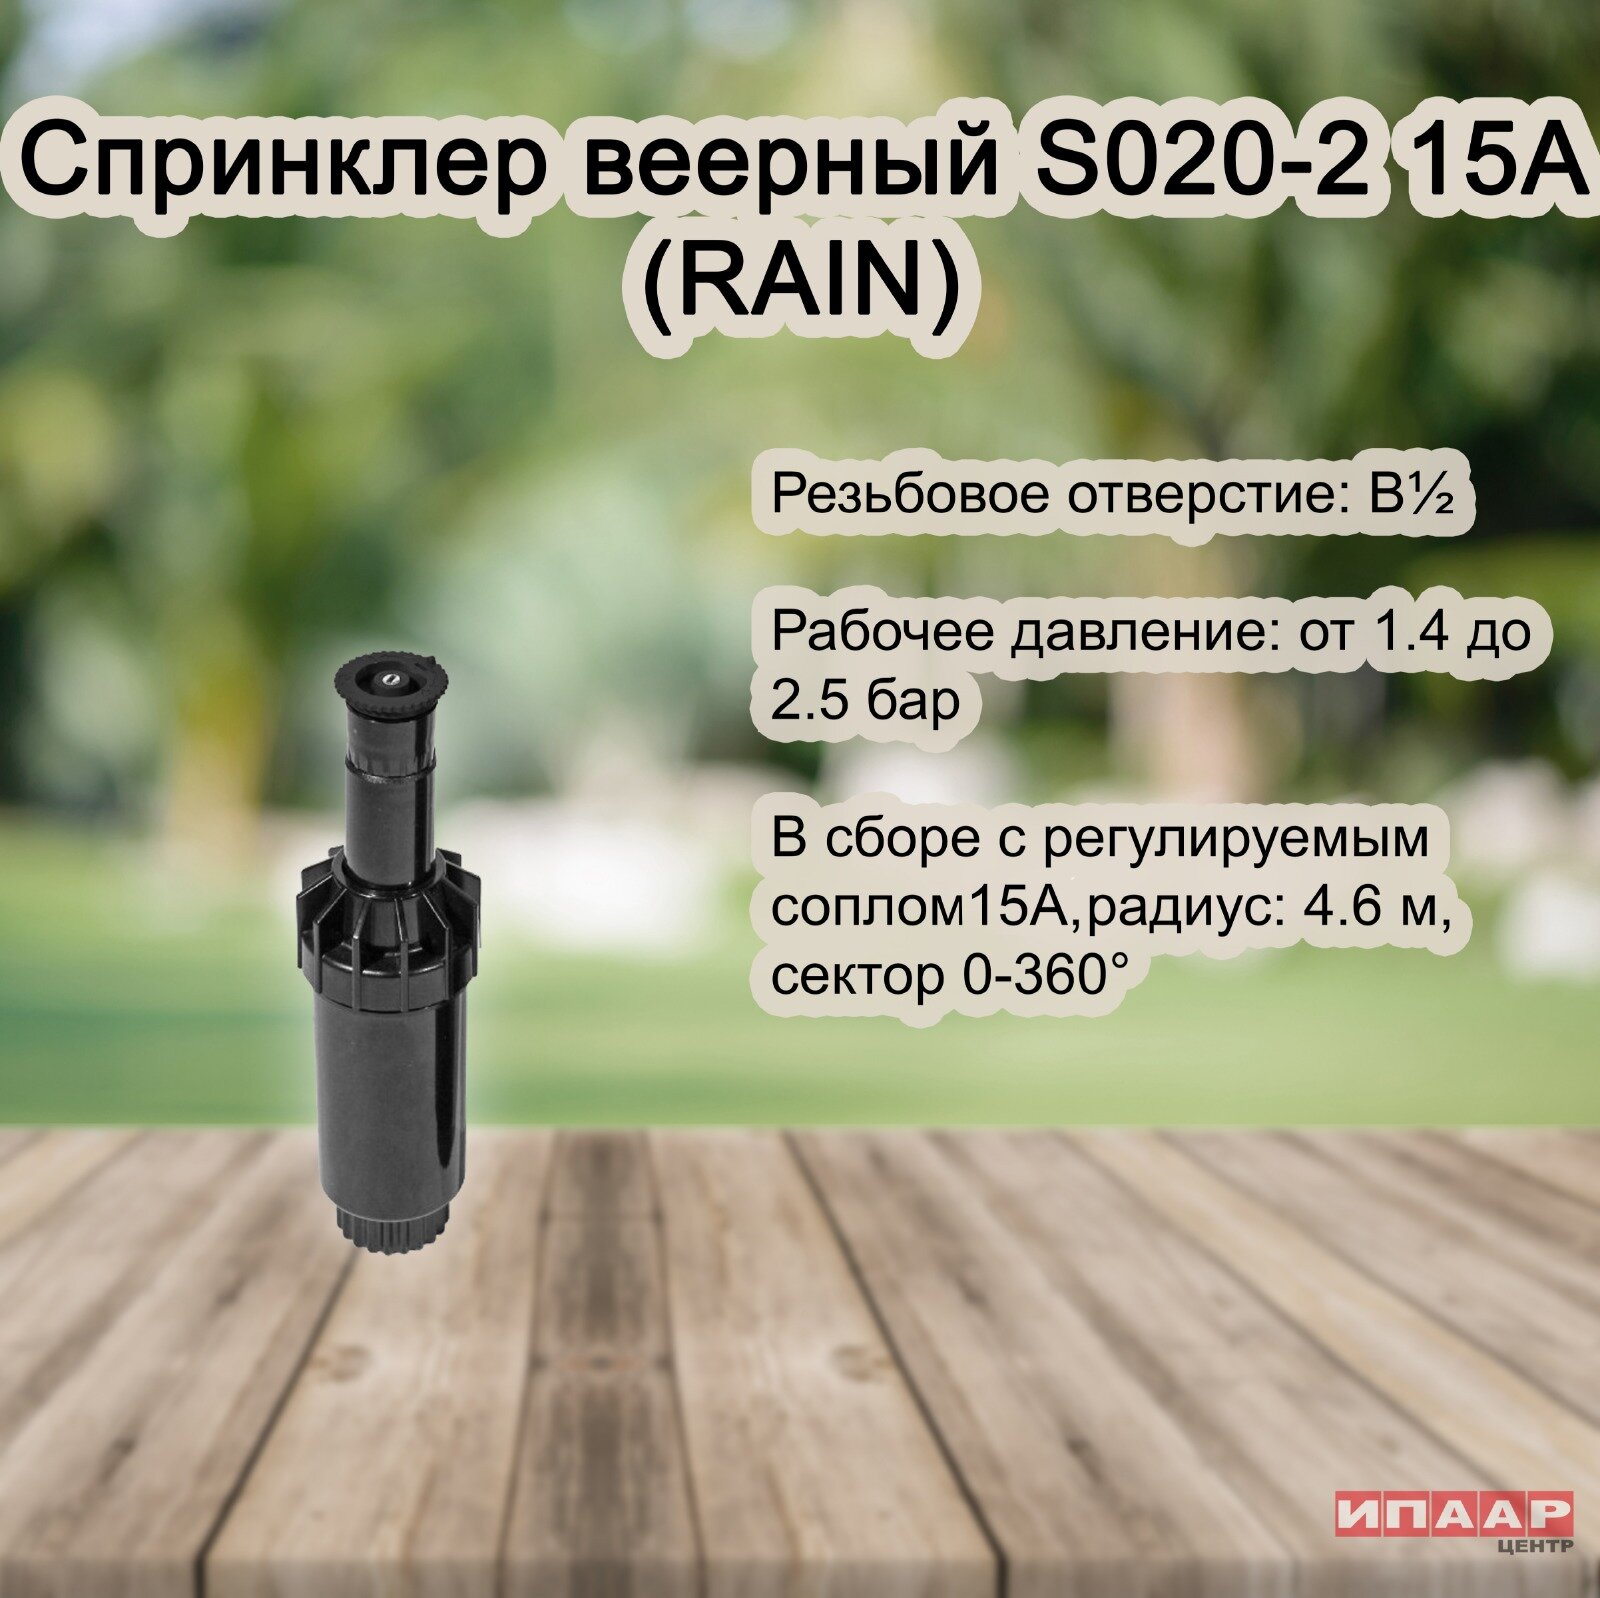 Спринклер веерный S020-2 15A (RAIN)